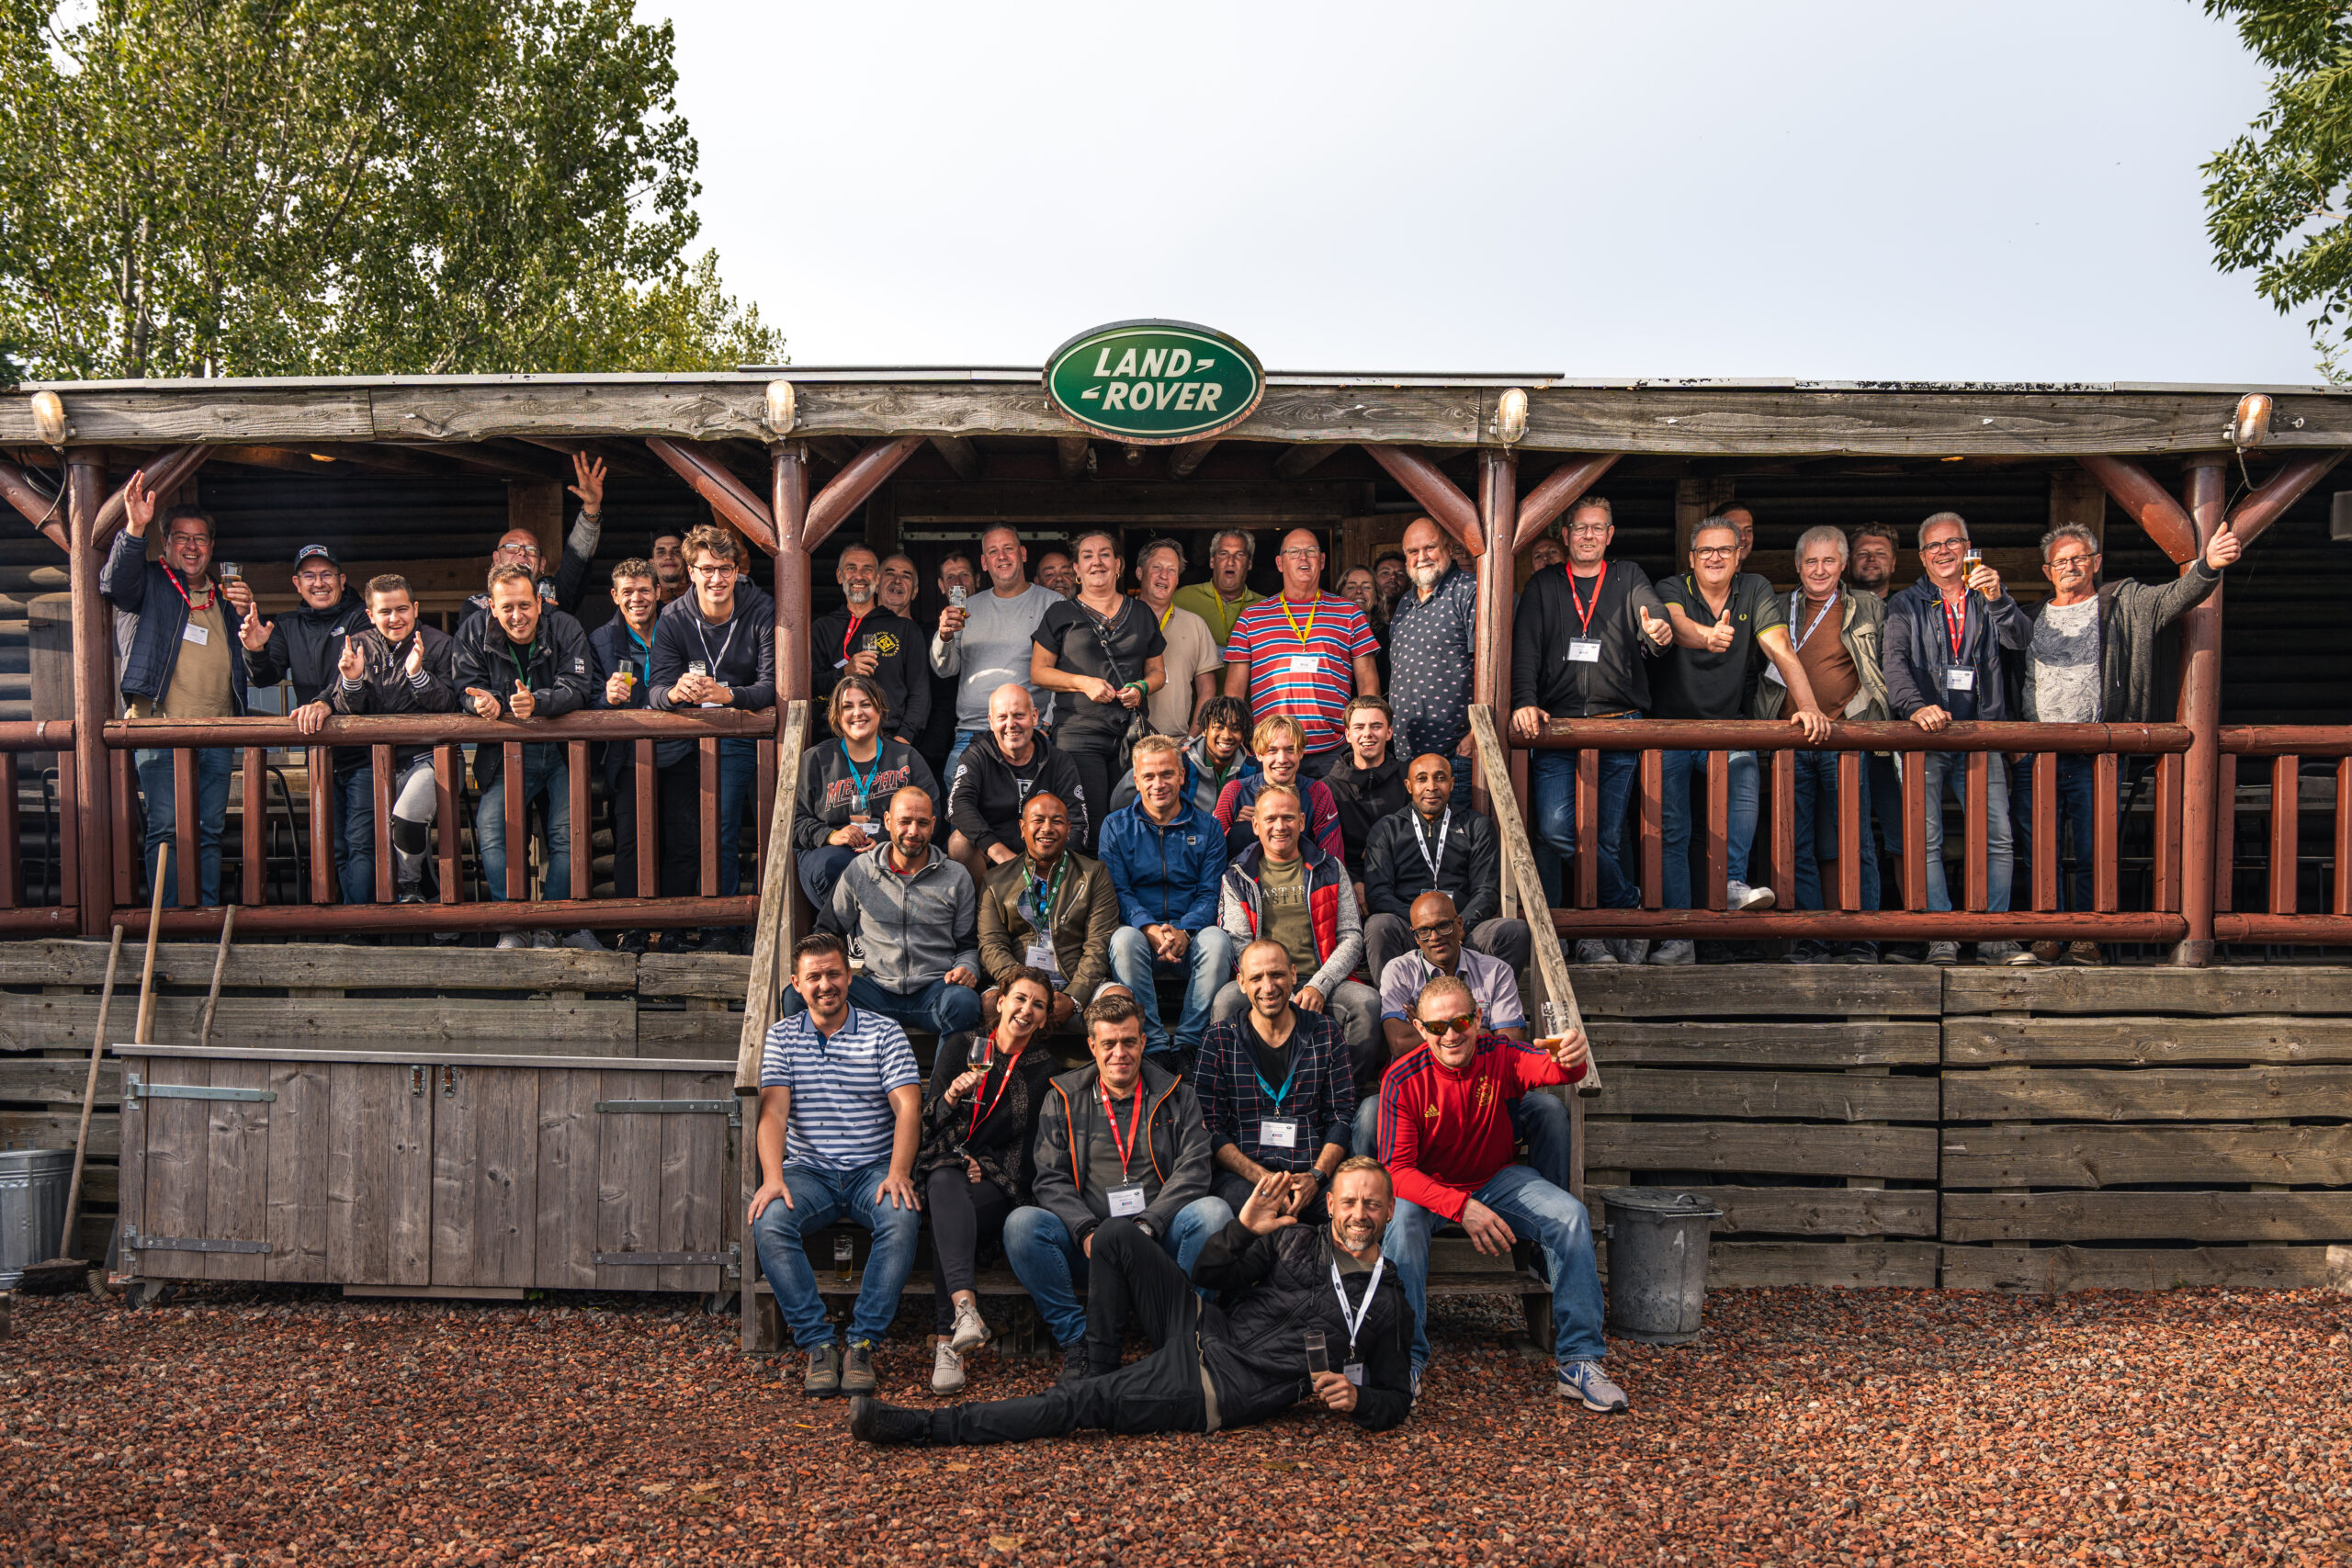 Het hele team van collega's van familiebedrijf Orly & Endevoets in 's-Hertogenbosch